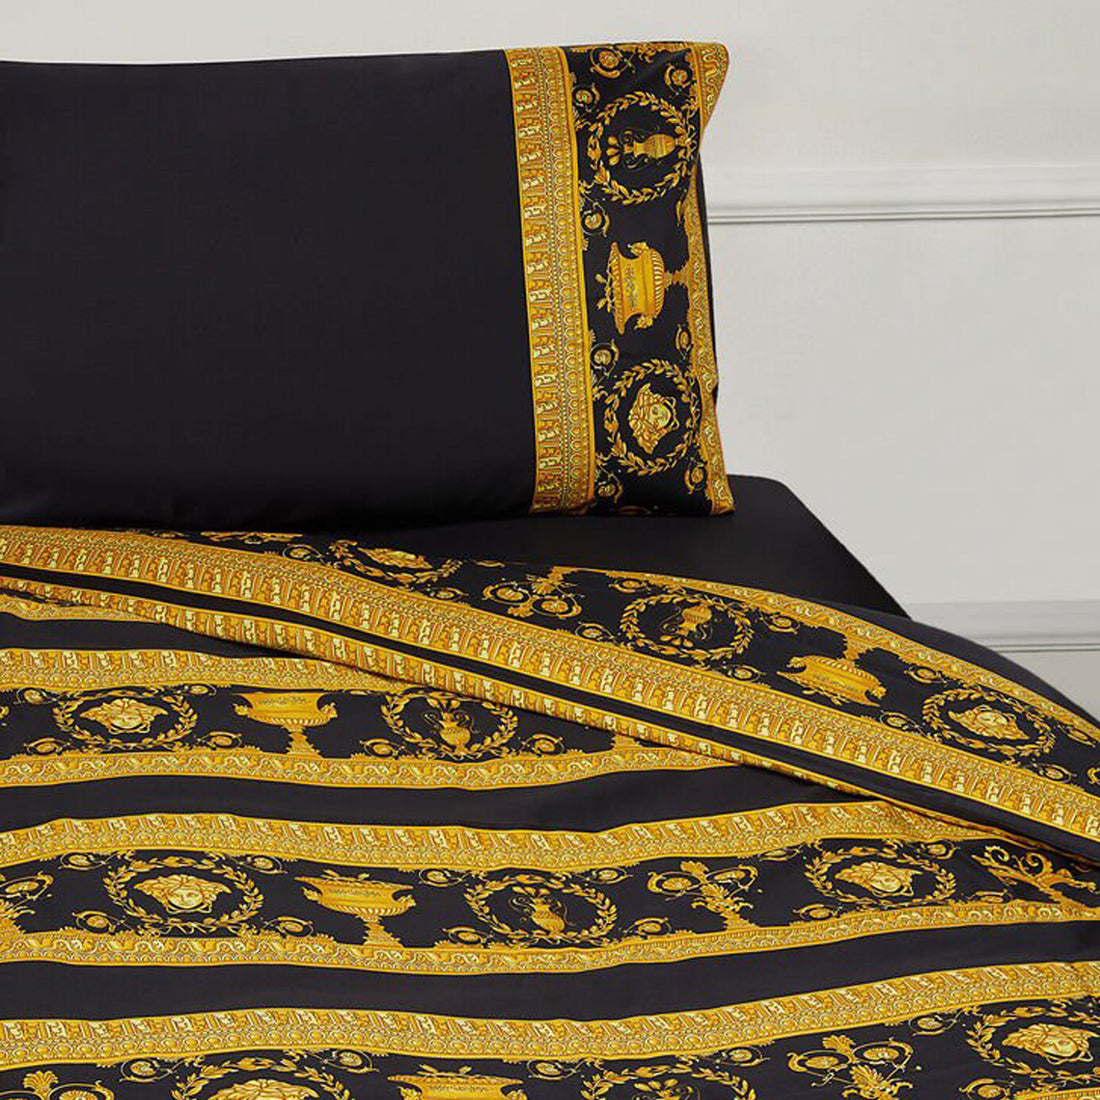 Barocco Black Duvet Bed Set - King Size